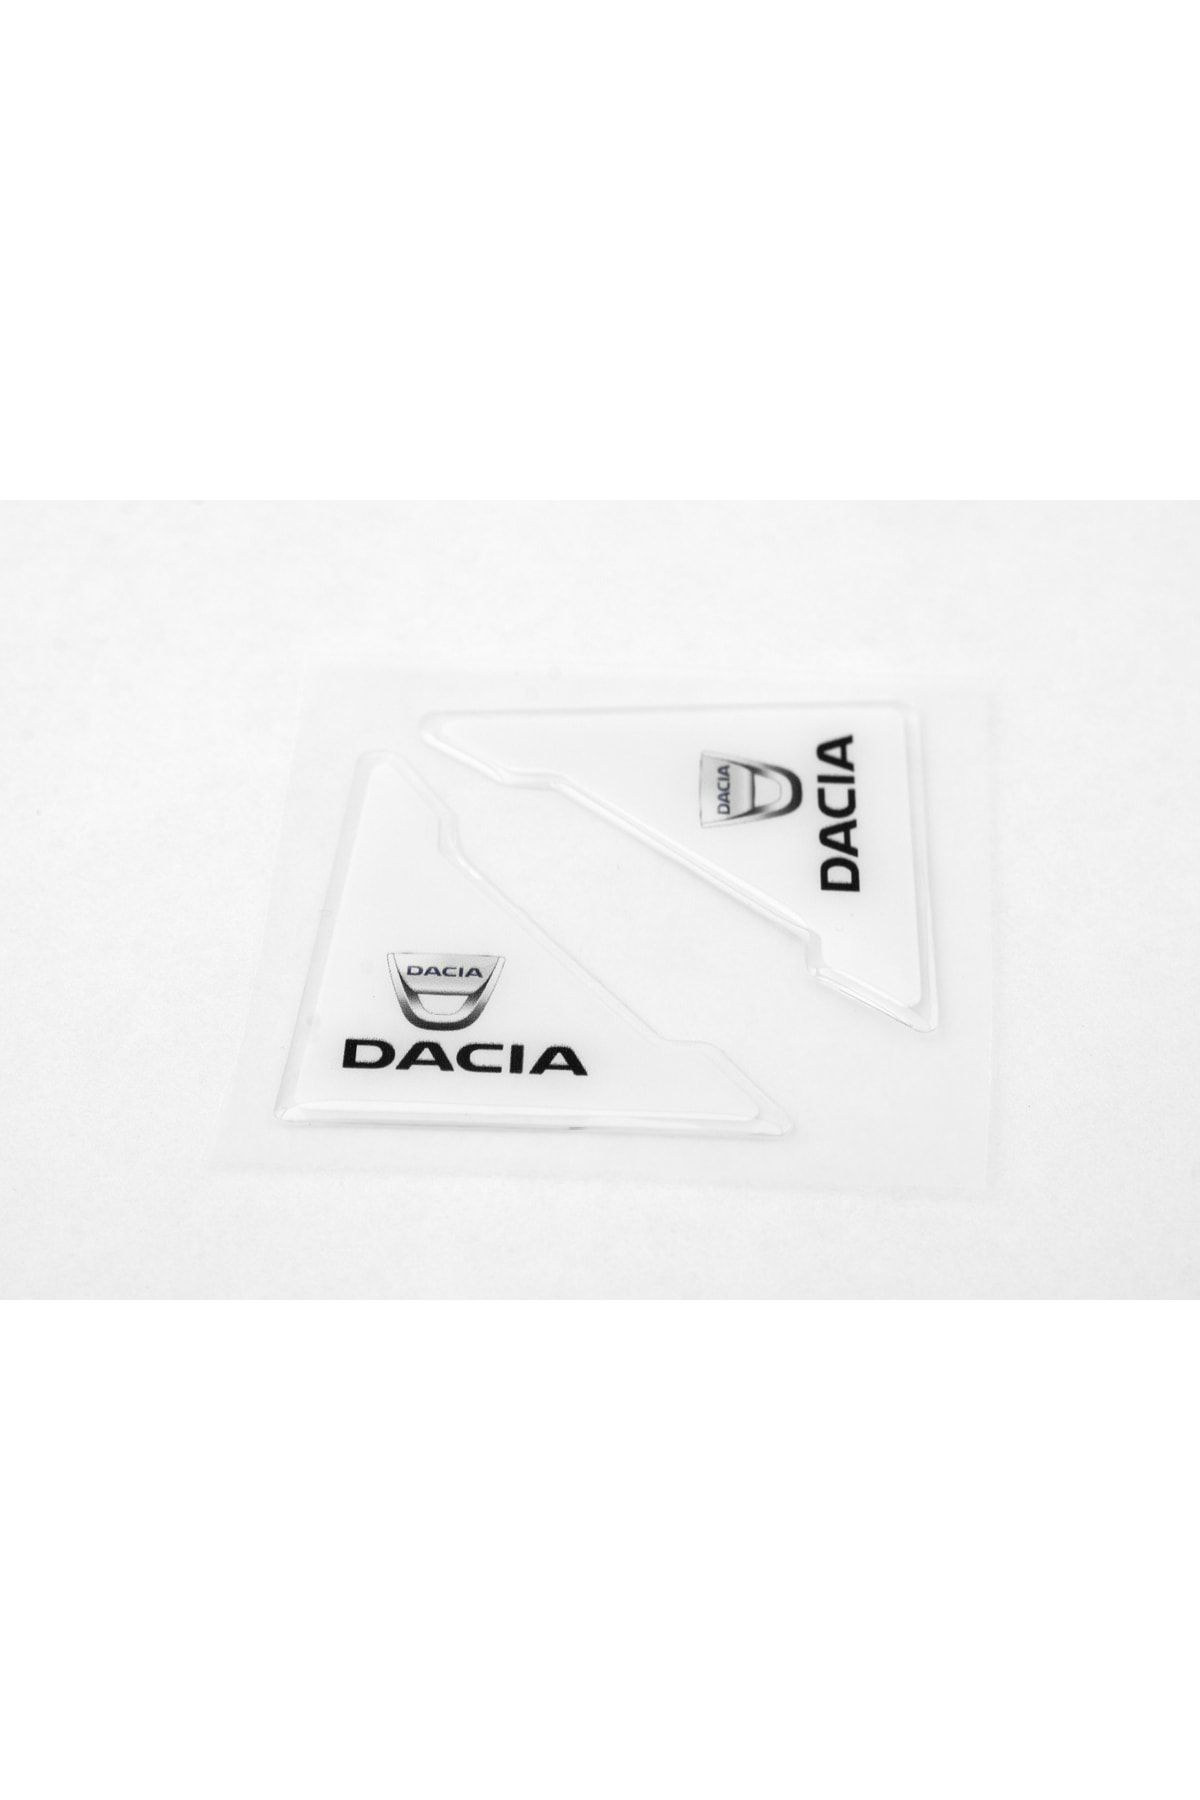 Flow Dacia Özel Logolu Uyumlu Otomobil Kapı Çizik Darbe Koruma Silikon Beyaz